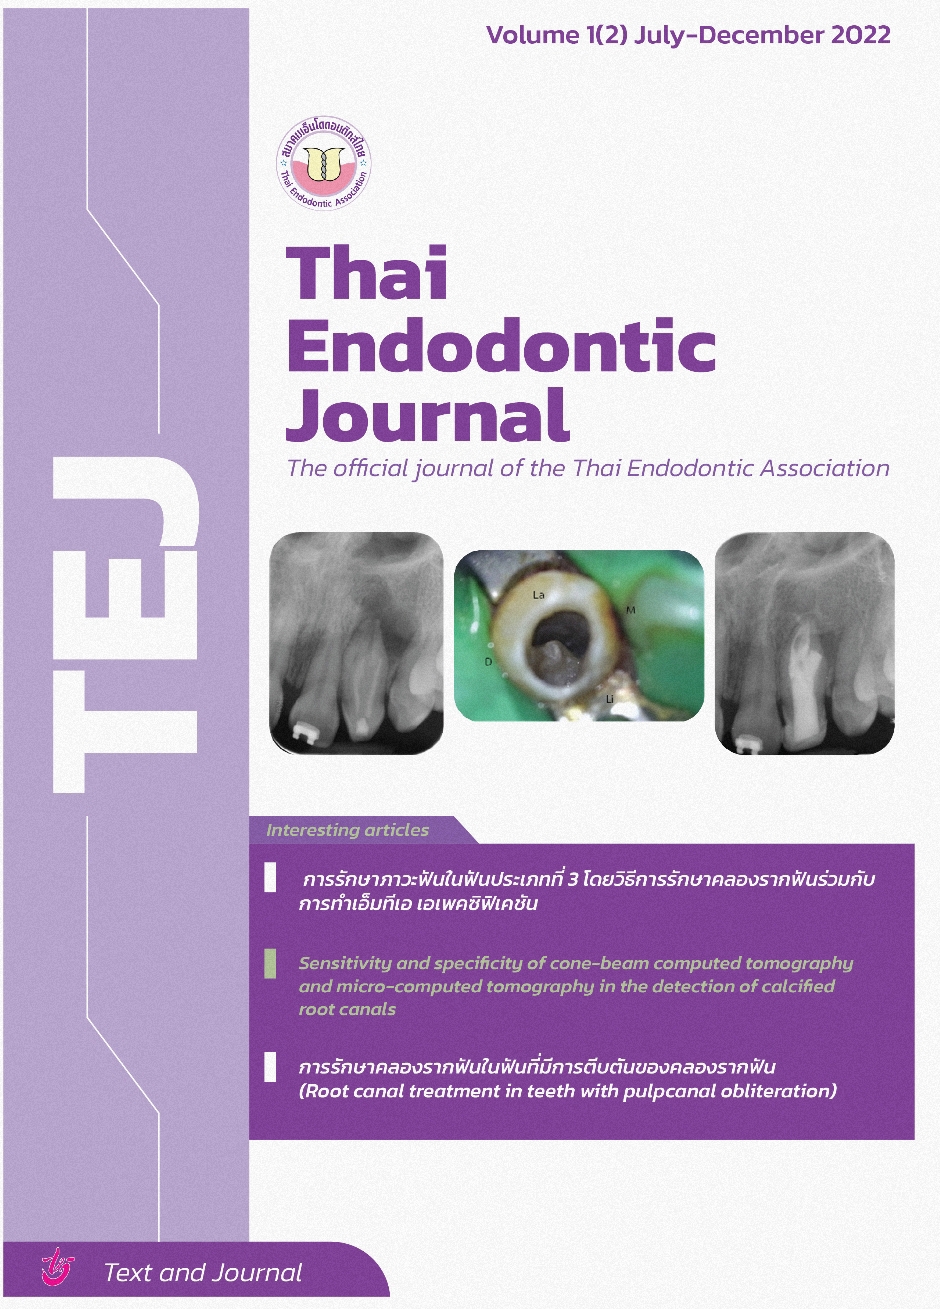 Thai endodontic journal